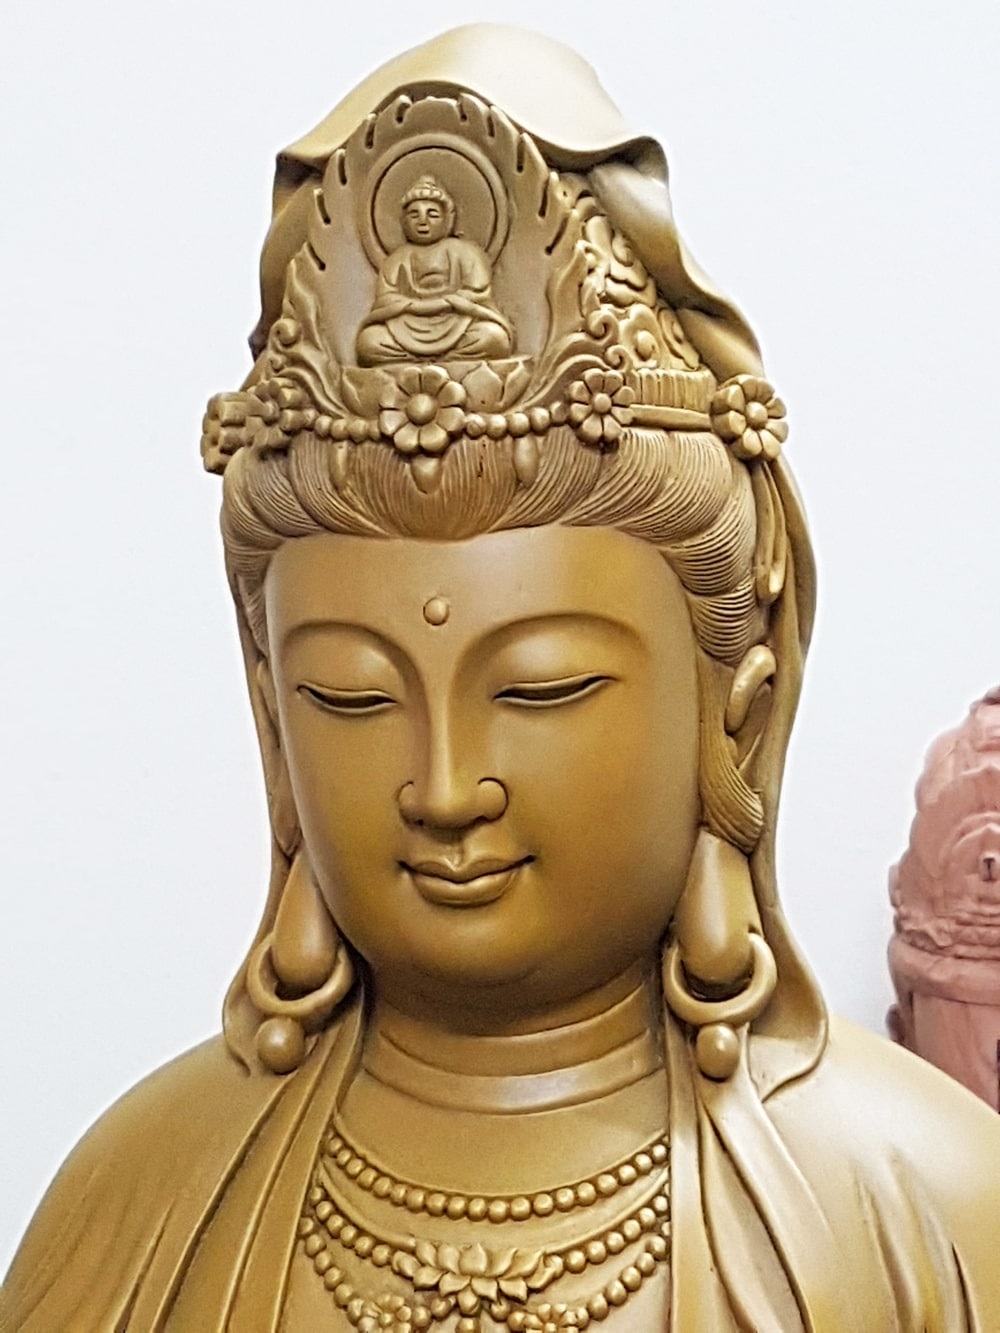 Câu chuyện phong thủy đằng sau hình tượng Phật Quan Thế Âm Bồ Tát